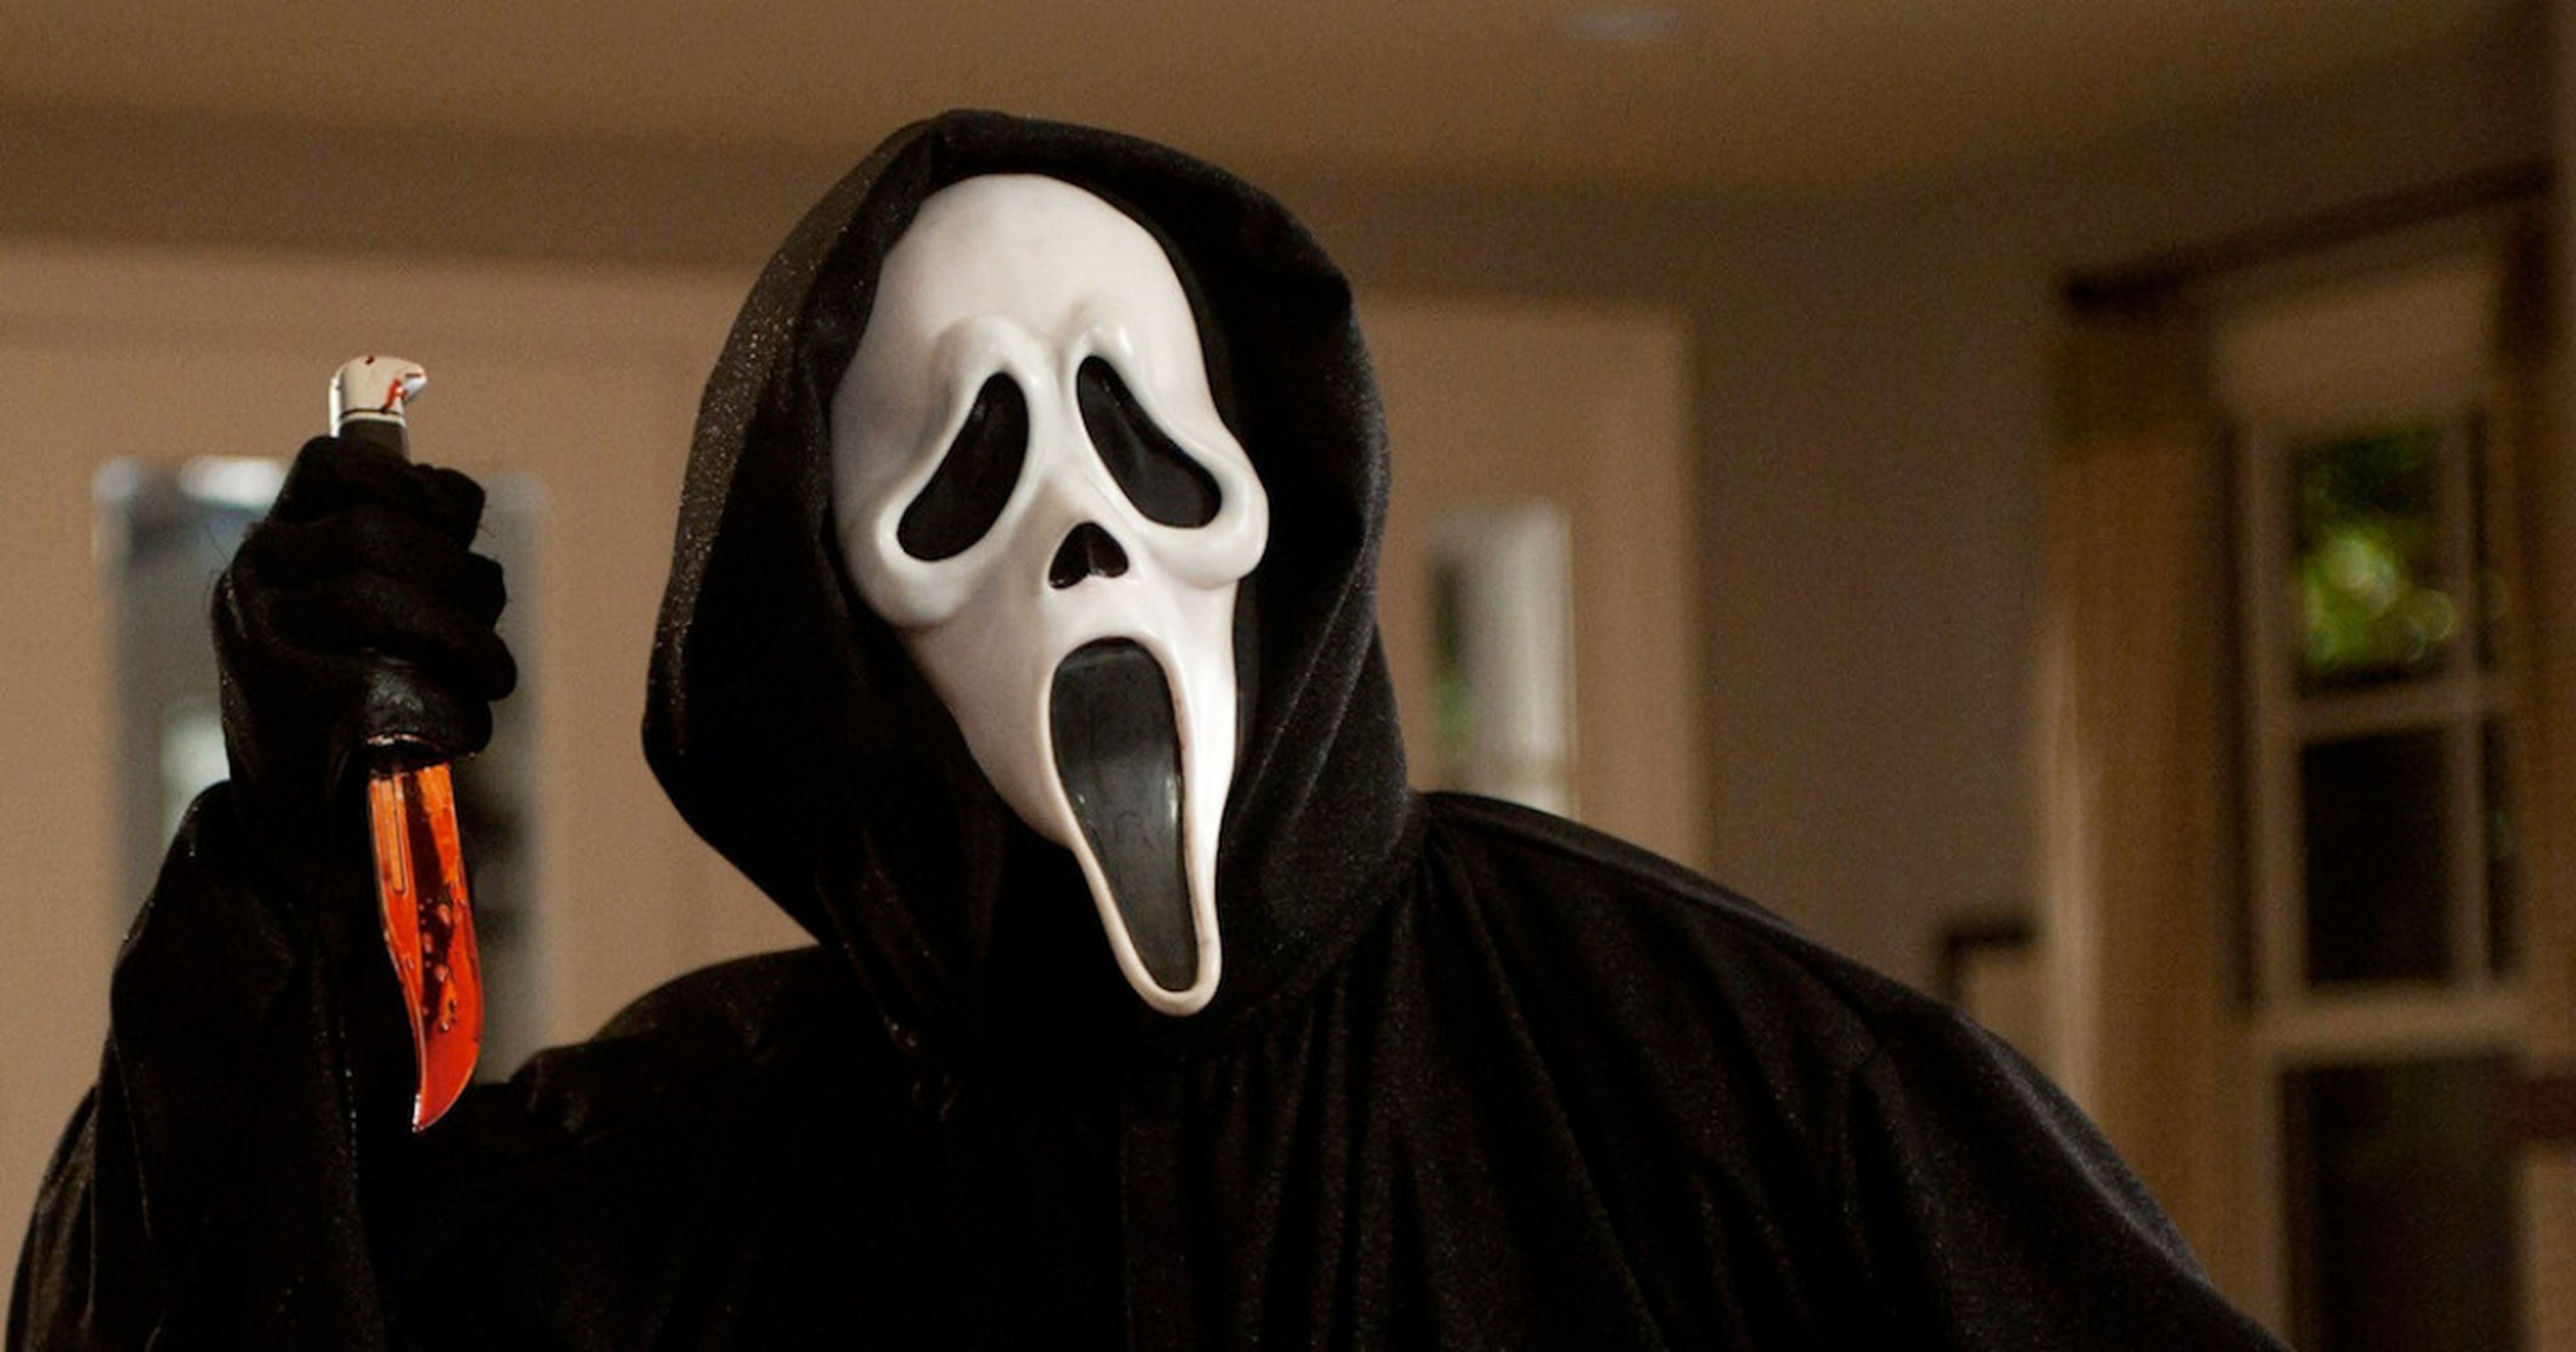 Scream - Ghostface